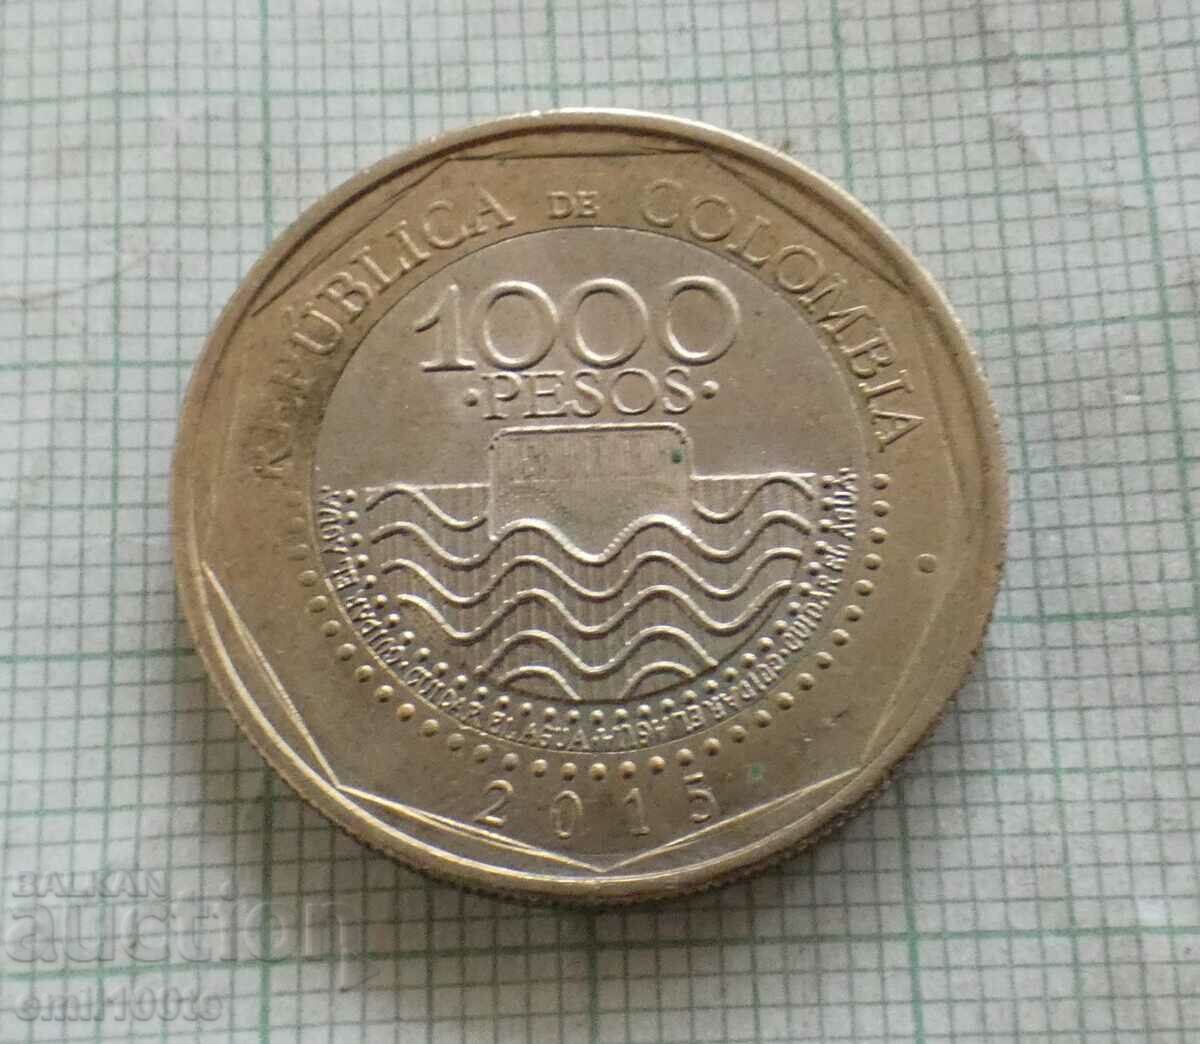 1000 πέσος 2015 Κολομβία